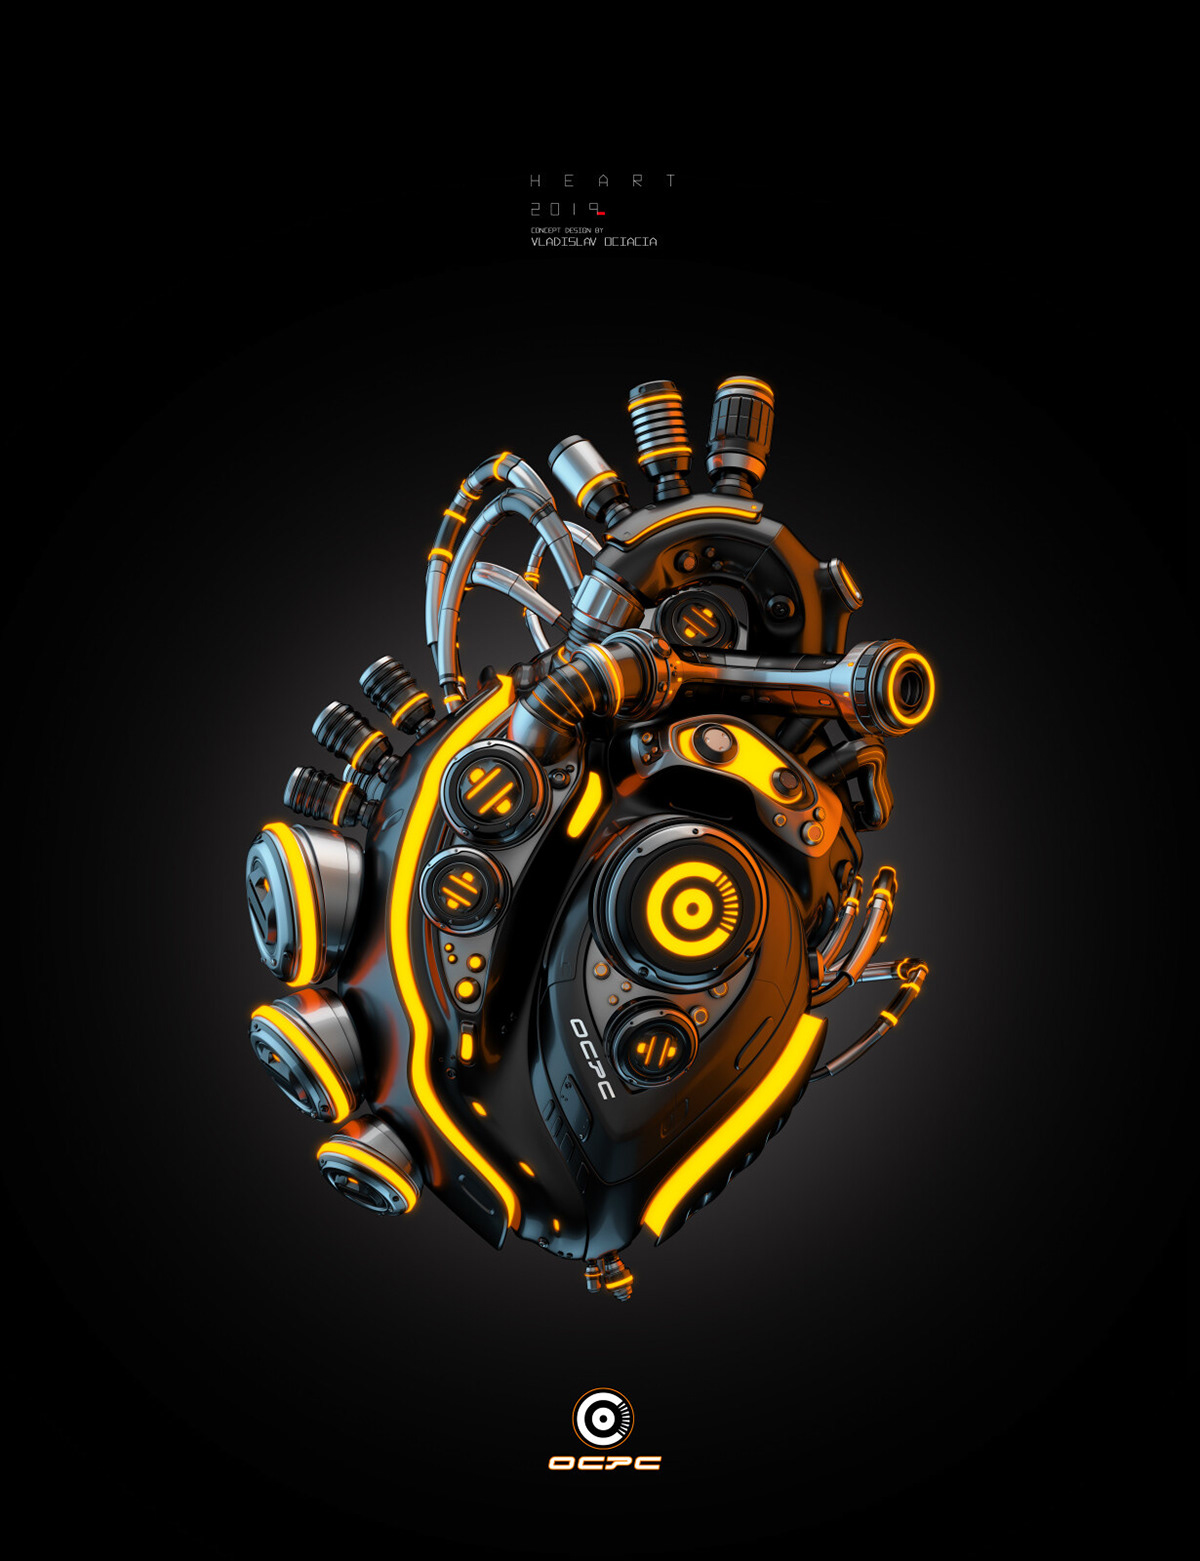 Robot heart OCPC on